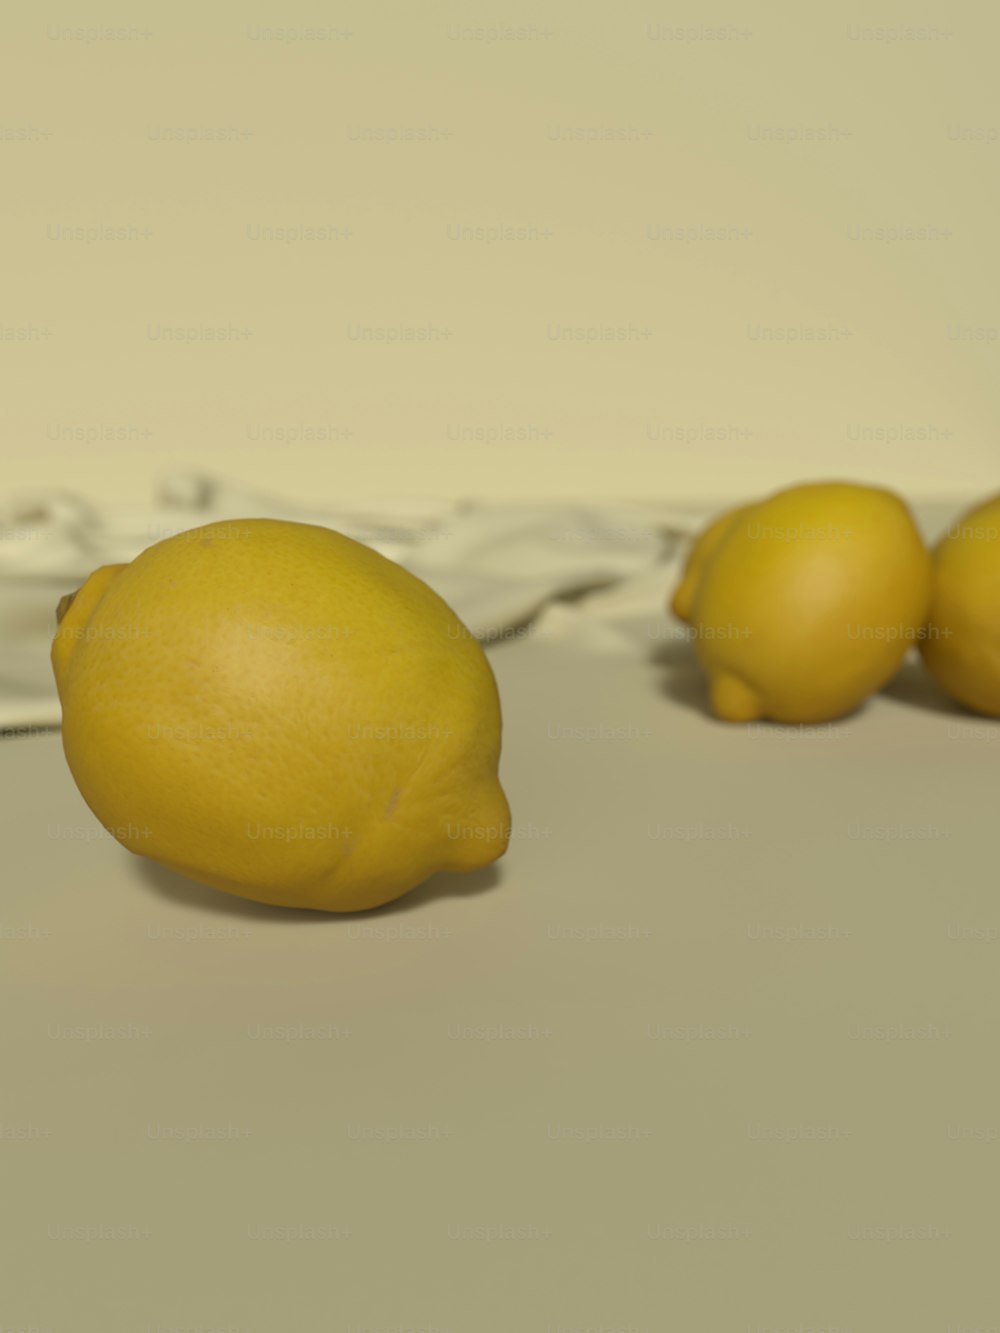 나란히 앉아있는 레몬 그룹